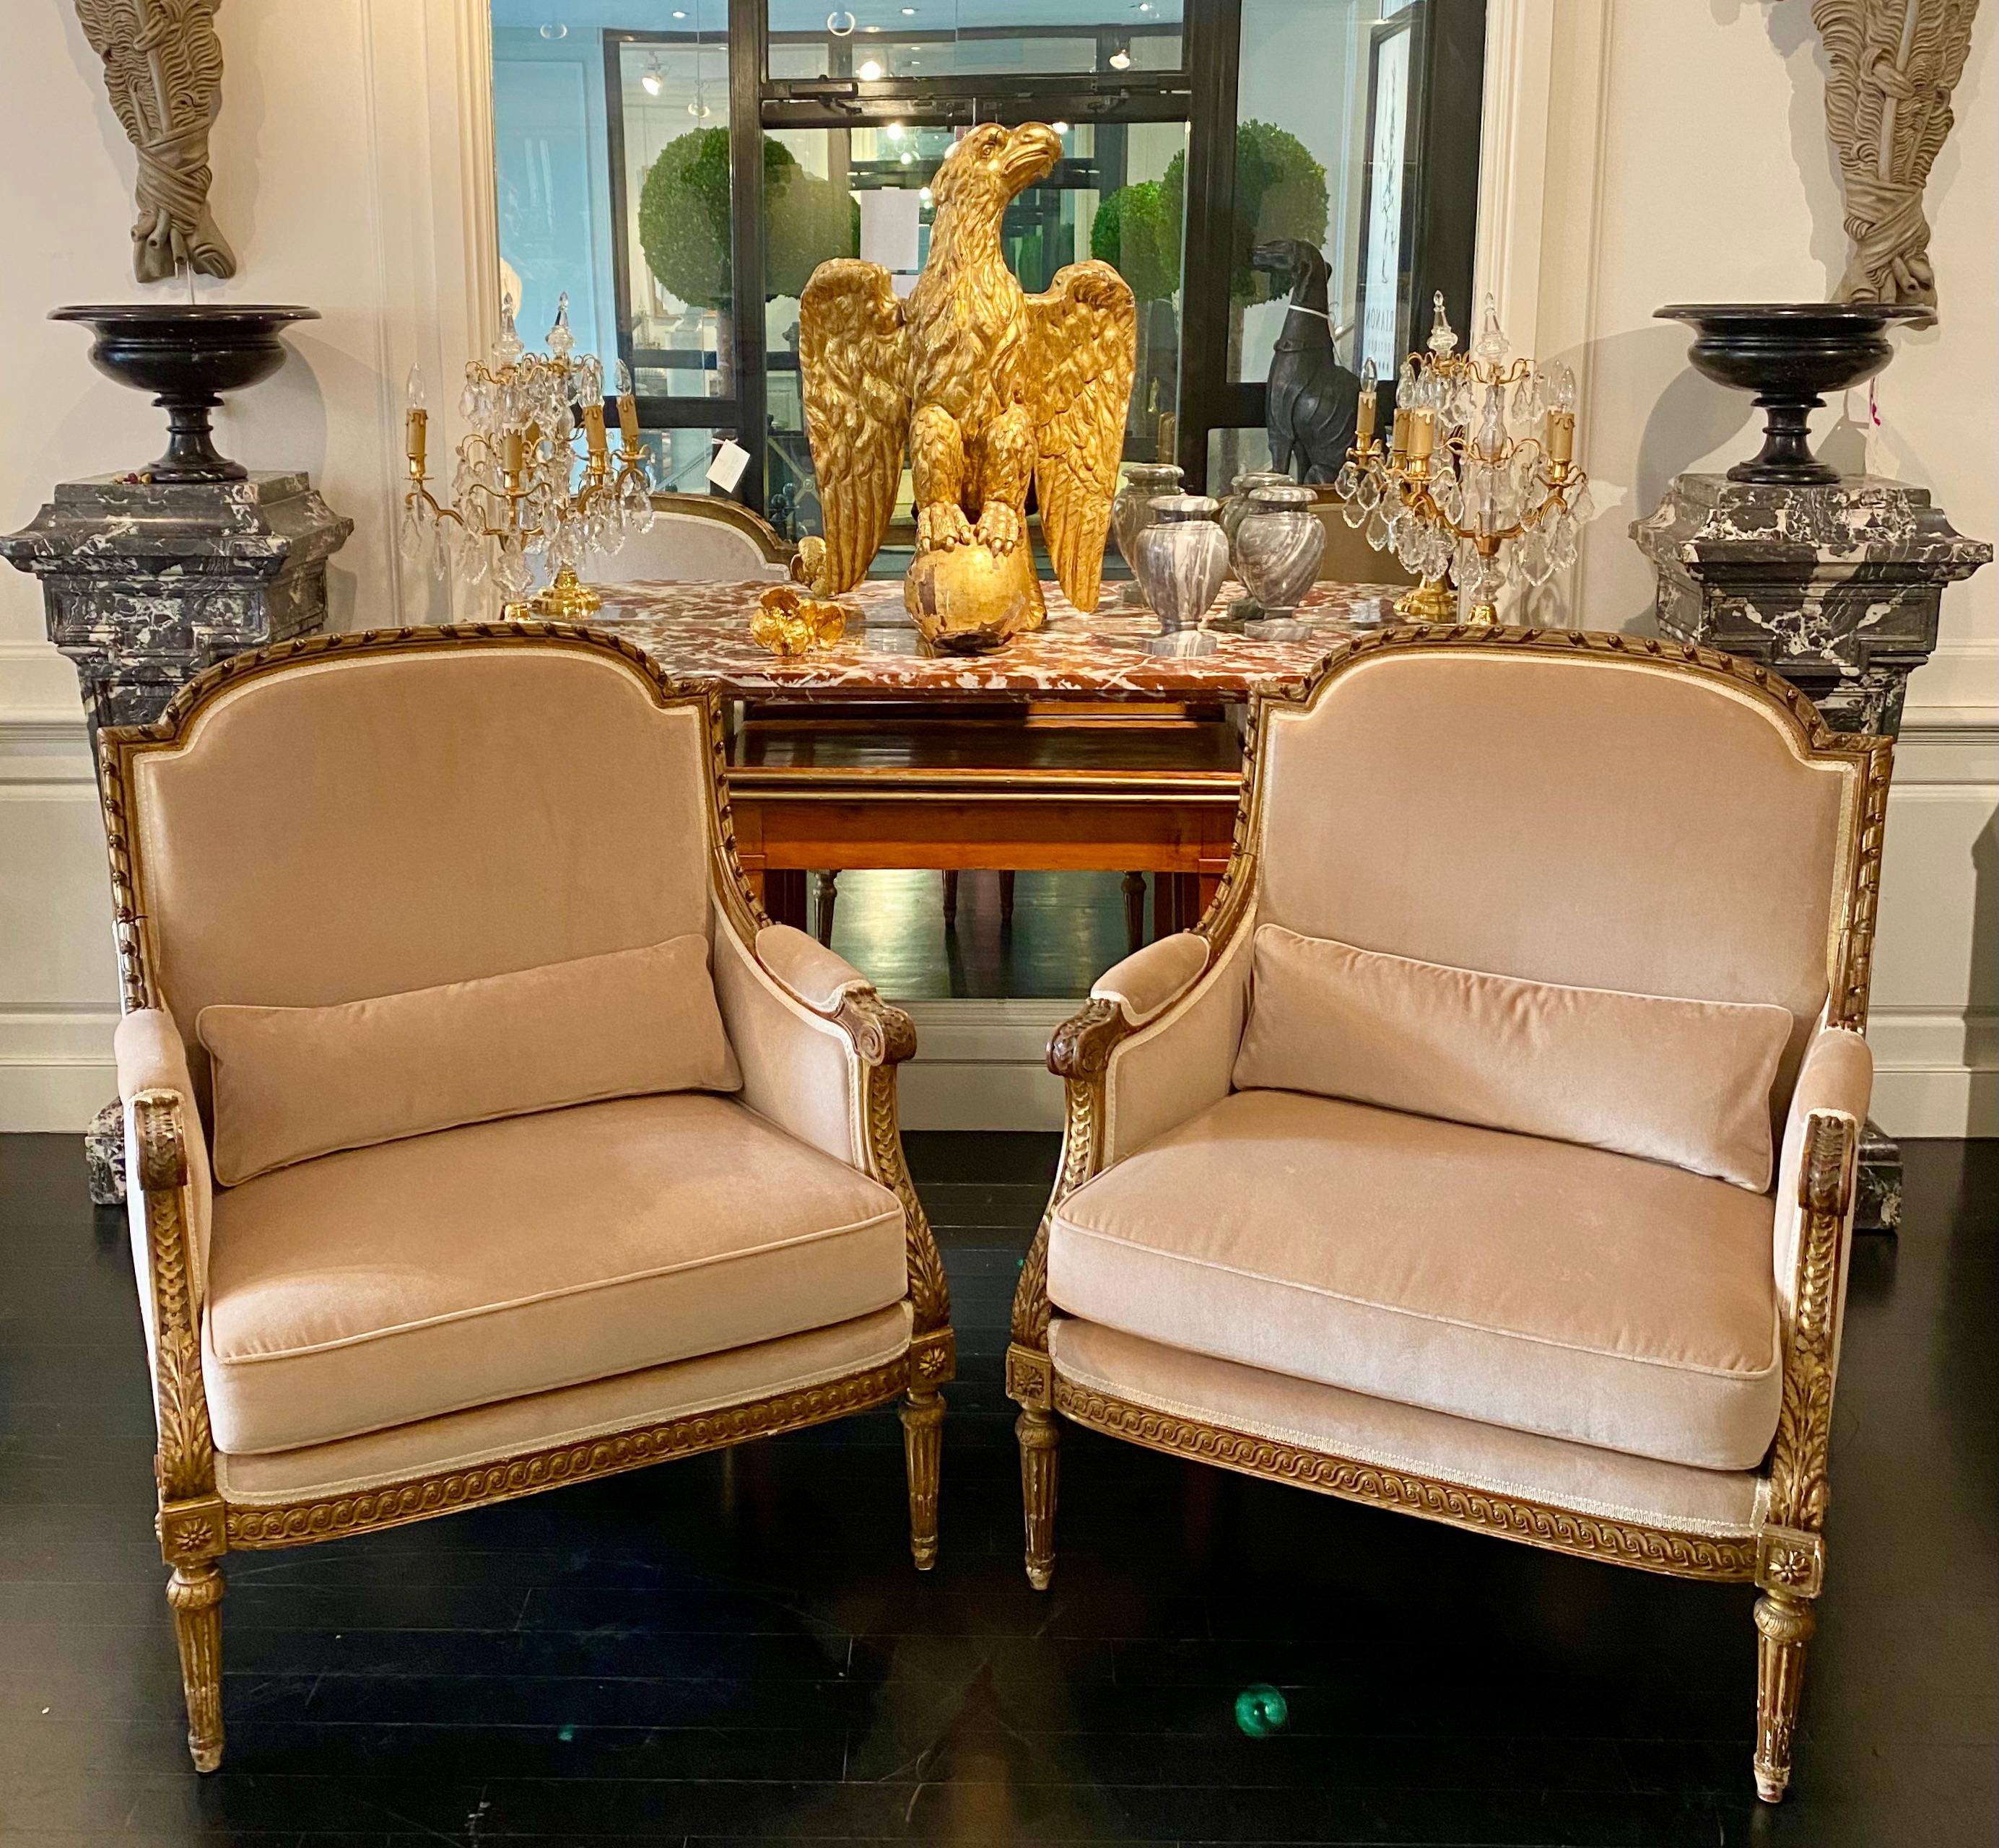 Paire de fauteuils bergère marquise de style Louis XVI, en bois doré, 19e siècle.
Dans le style épuré et classique de Louis XVI, le nom de Marquise est attribué en raison de leur largeur exceptionnelle. Cette rare paire dorée est en très bon état